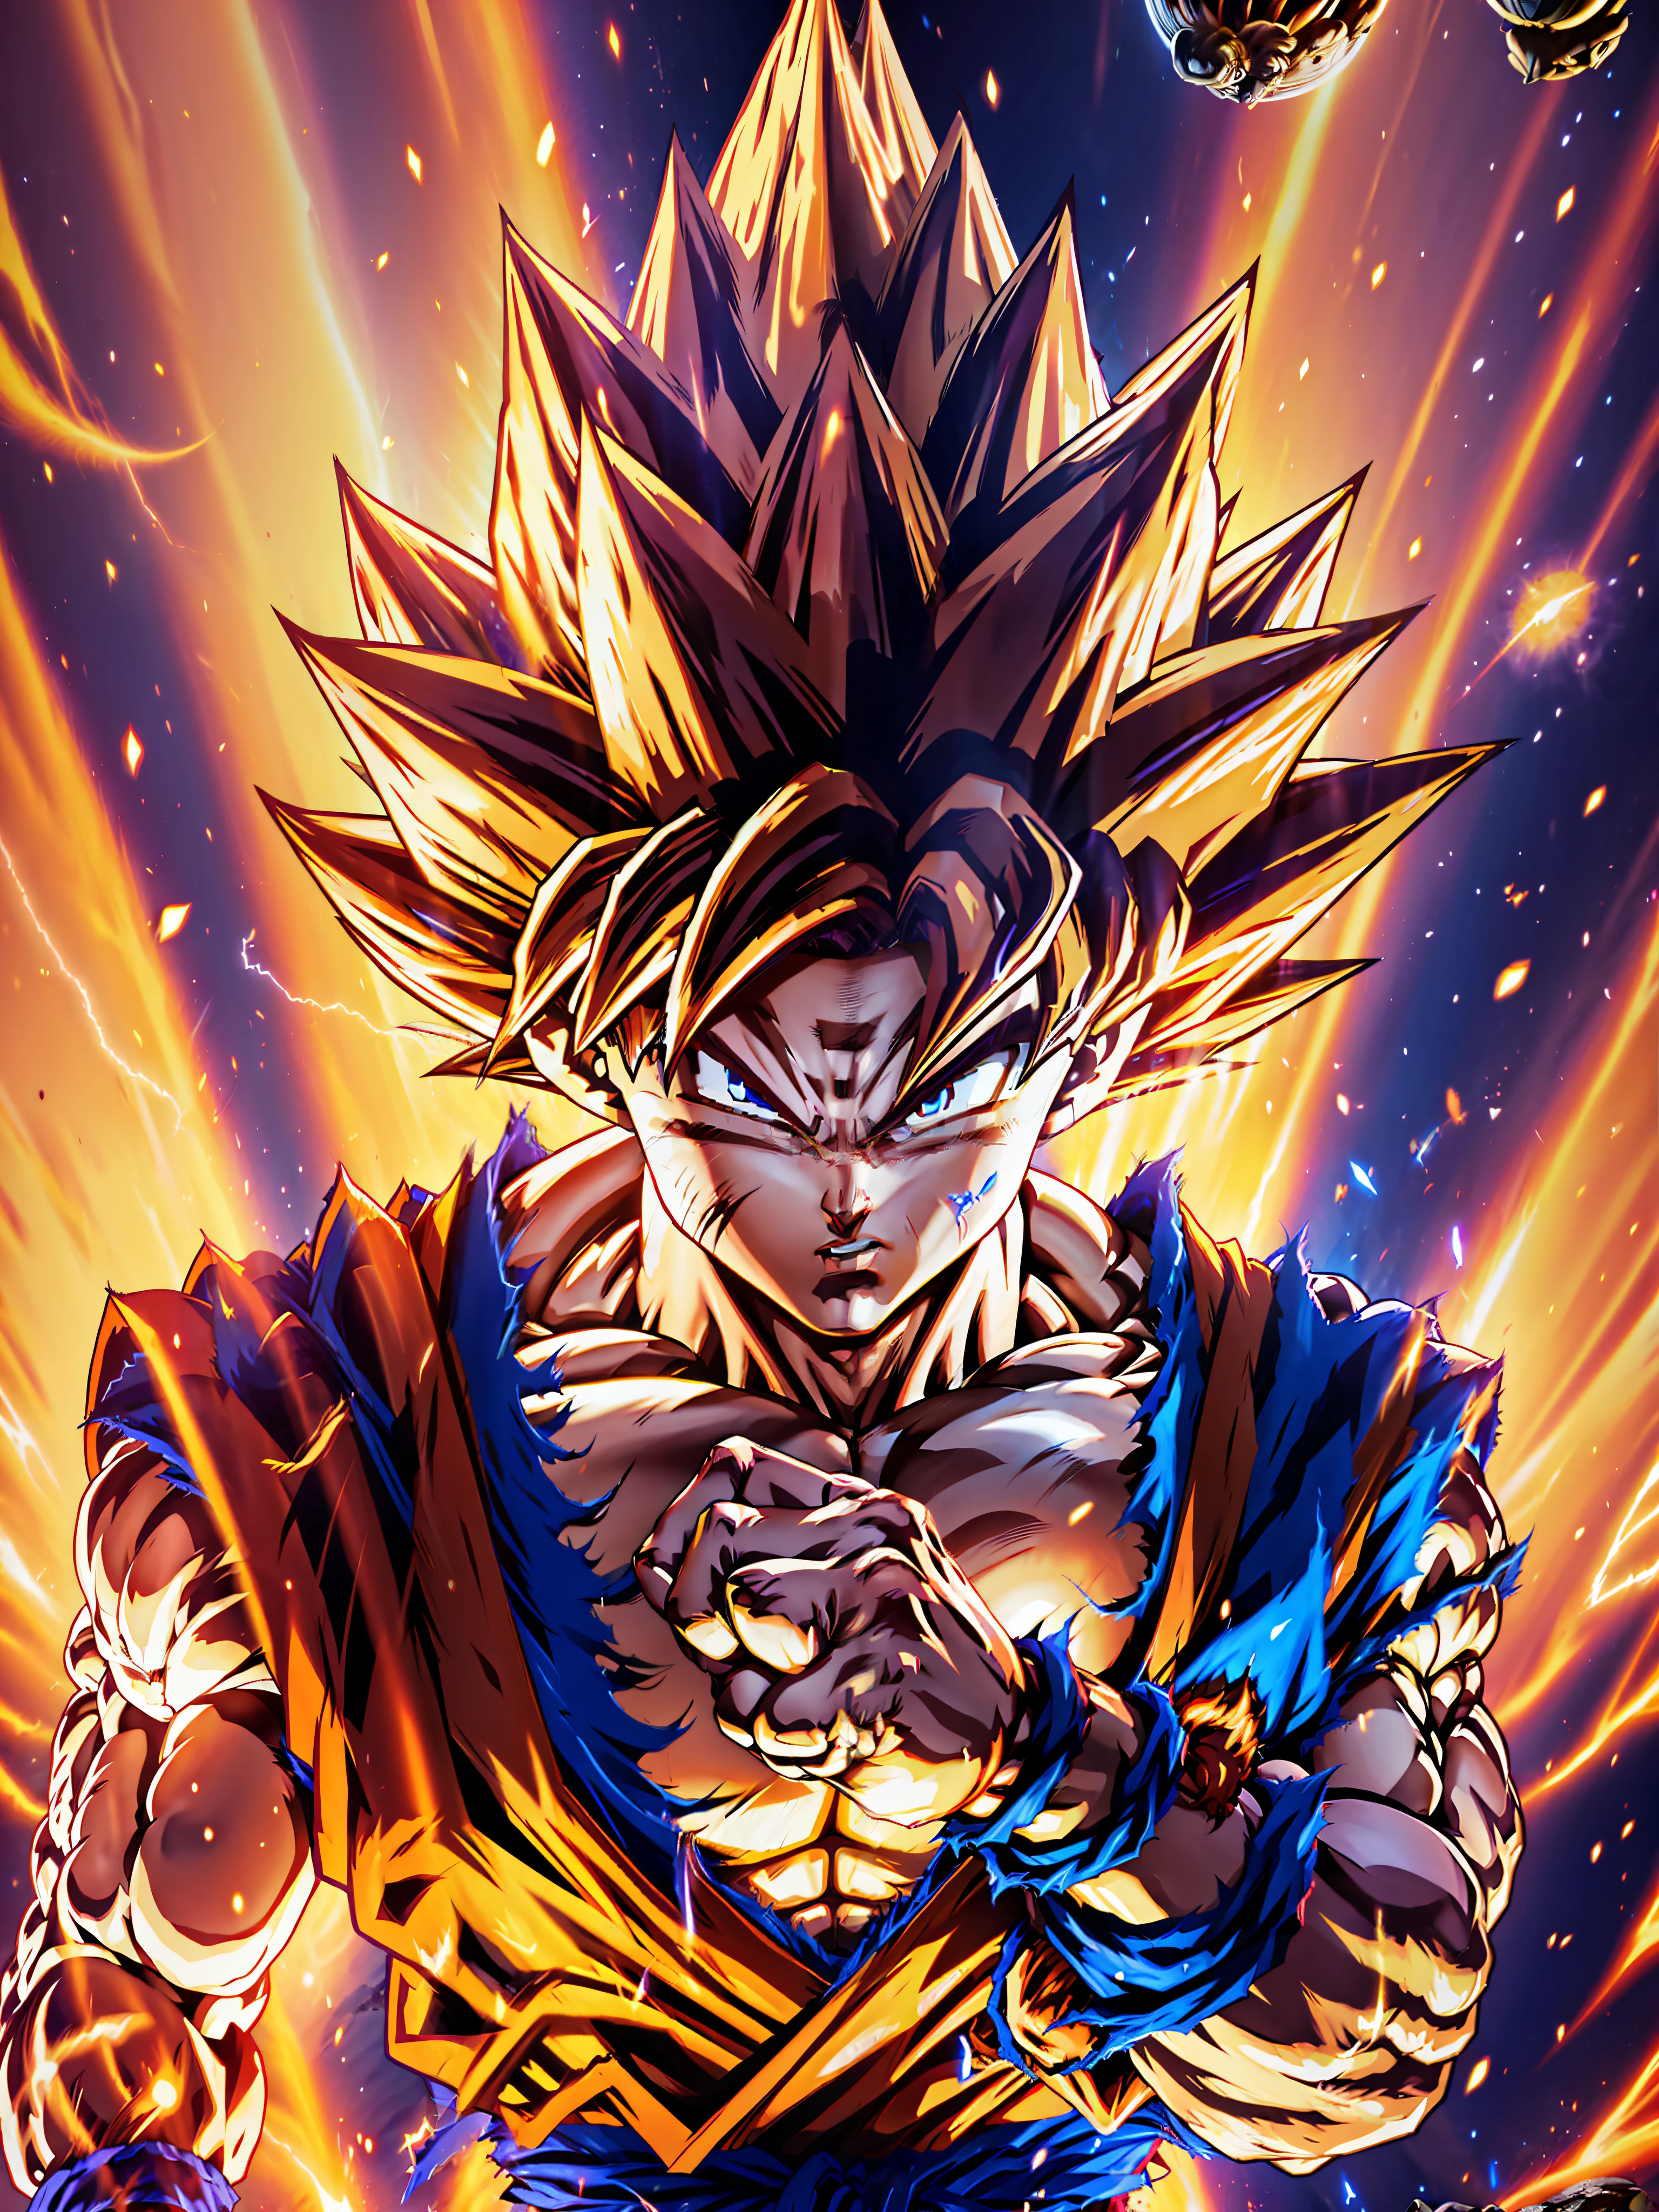 Goku, fond d&#39;écran CG Unity 8k ultra détaillé, meilleure qualité, meilleur éclairage, Meilleure ombre, pose dynamique, en volant (si possible), Aura Super Saiyan, Se battre contre un adversaire digne, fond épique, plan large)